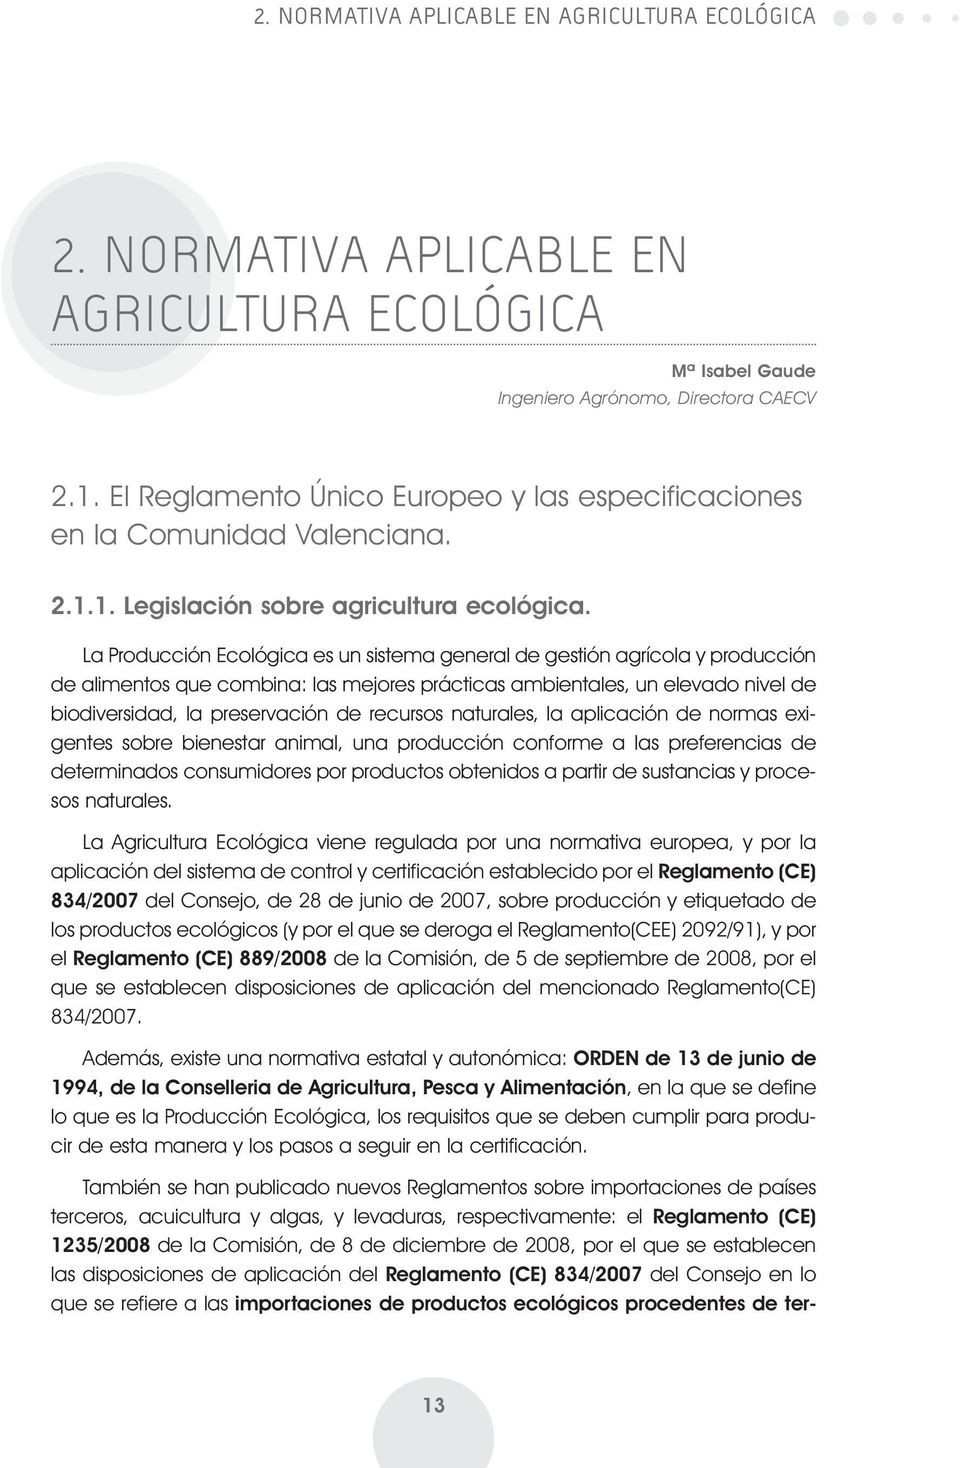 La Producción Ecológica es un sistema general de gestión agrícola y producción de alimentos que combina: las mejores prácticas ambientales, un elevado nivel de biodiversidad, la preservación de